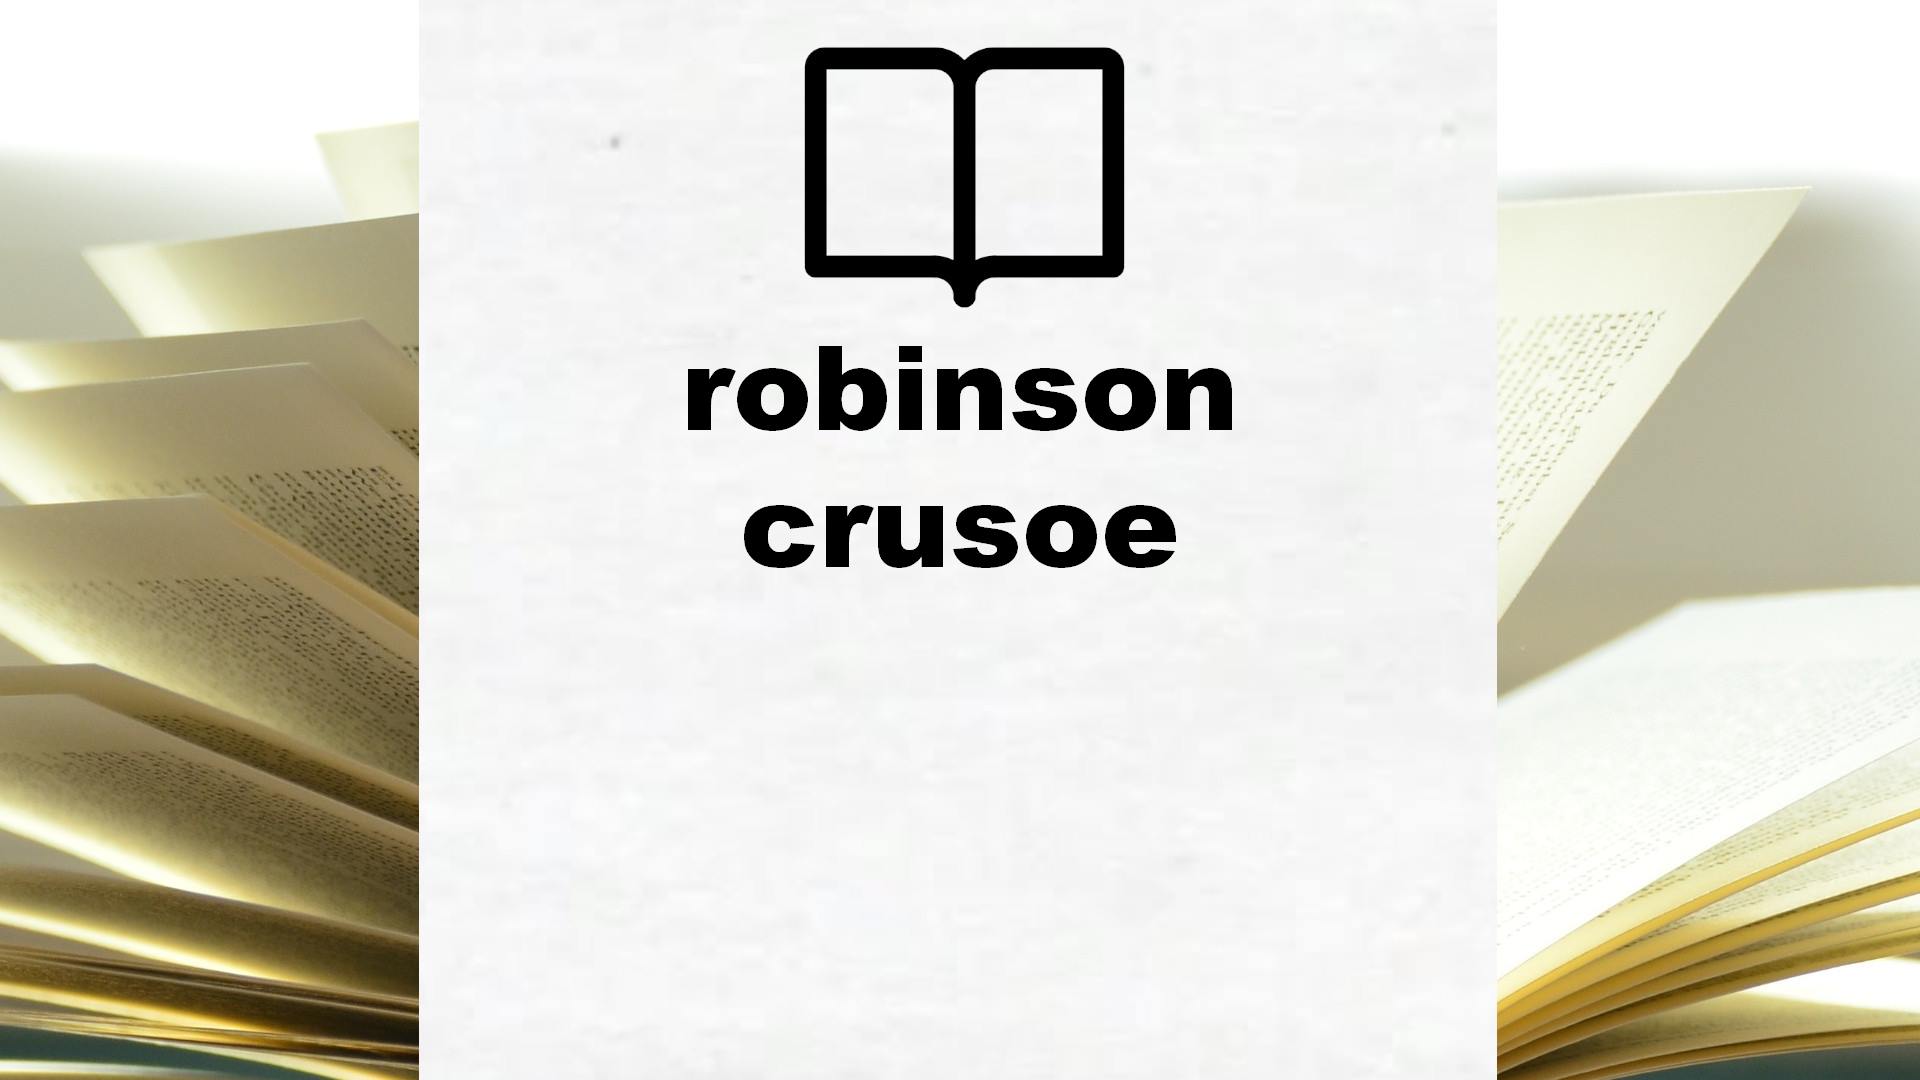 robinson crusoe – Boekrecensie